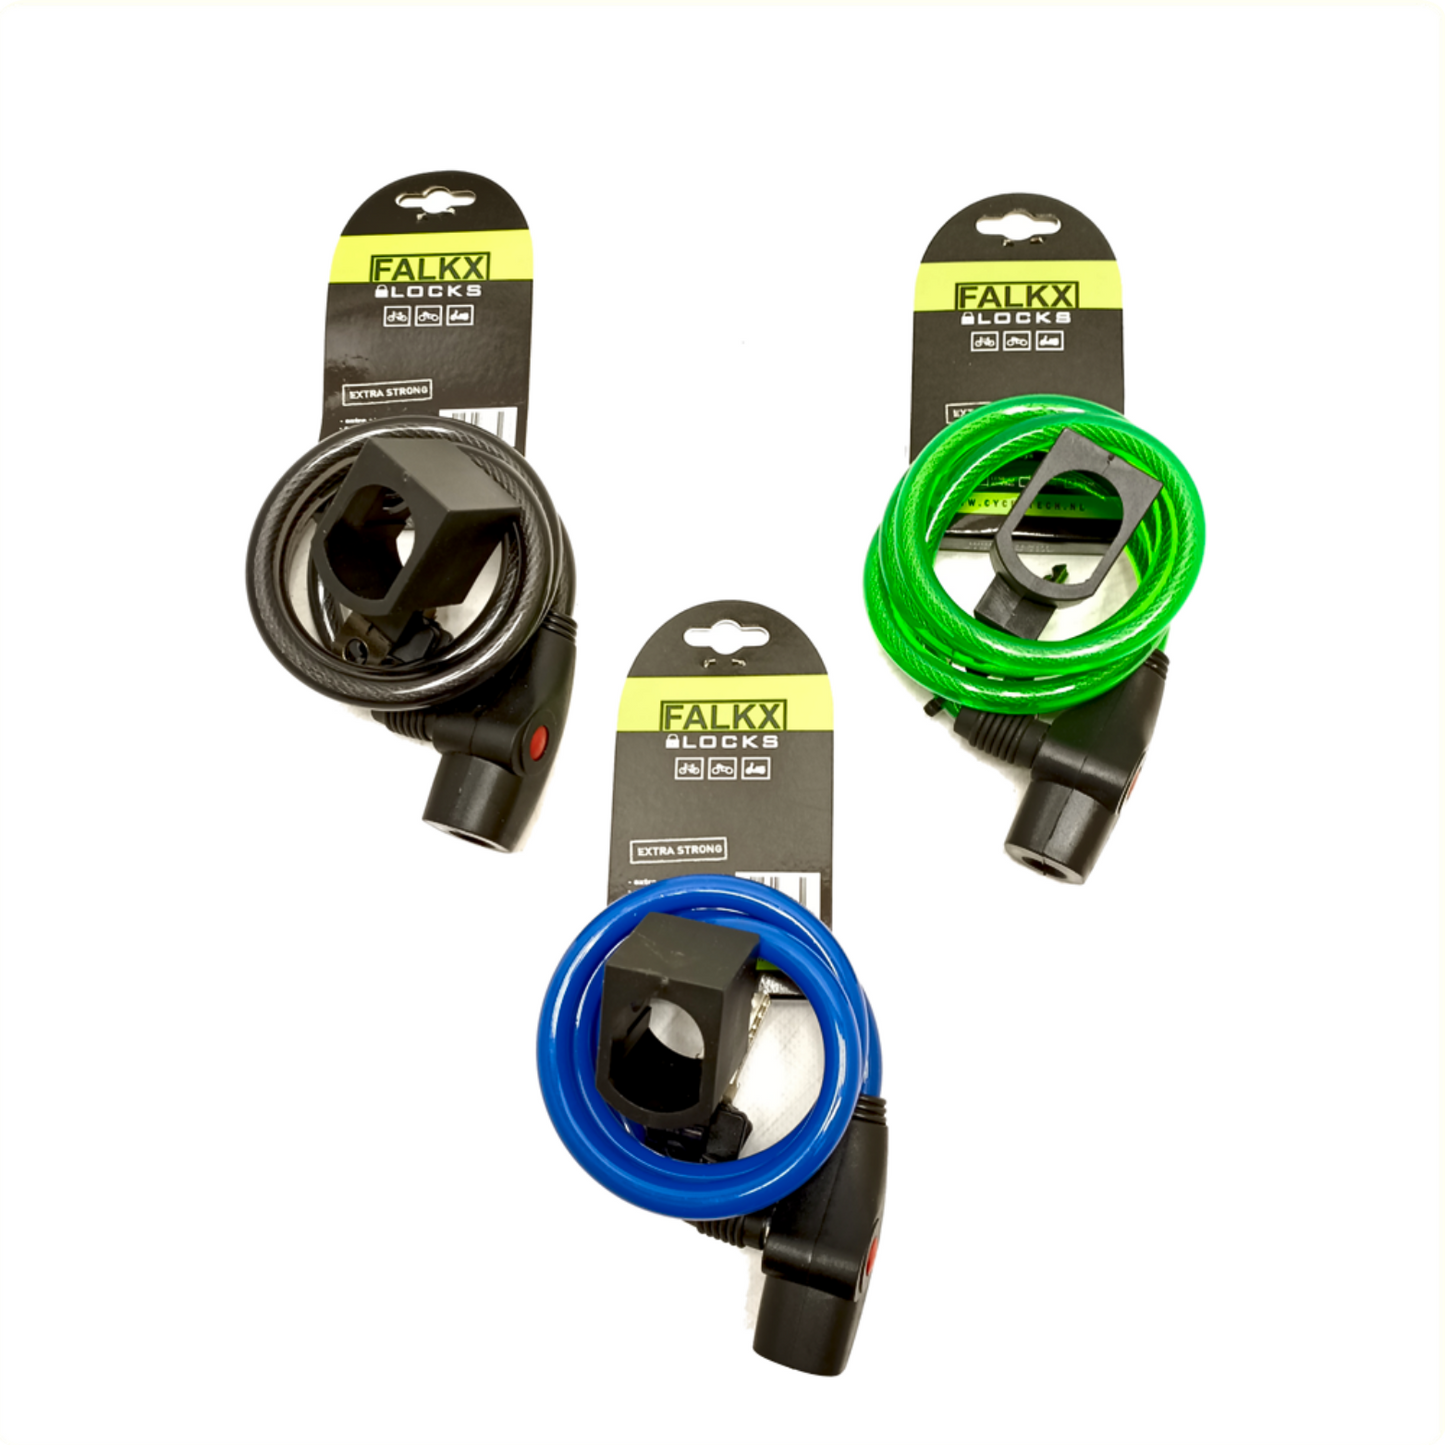 Falkx Falkx Spiral Cable Lock 1000x10 mm con soporte, color de surtido. Embalaje colgante